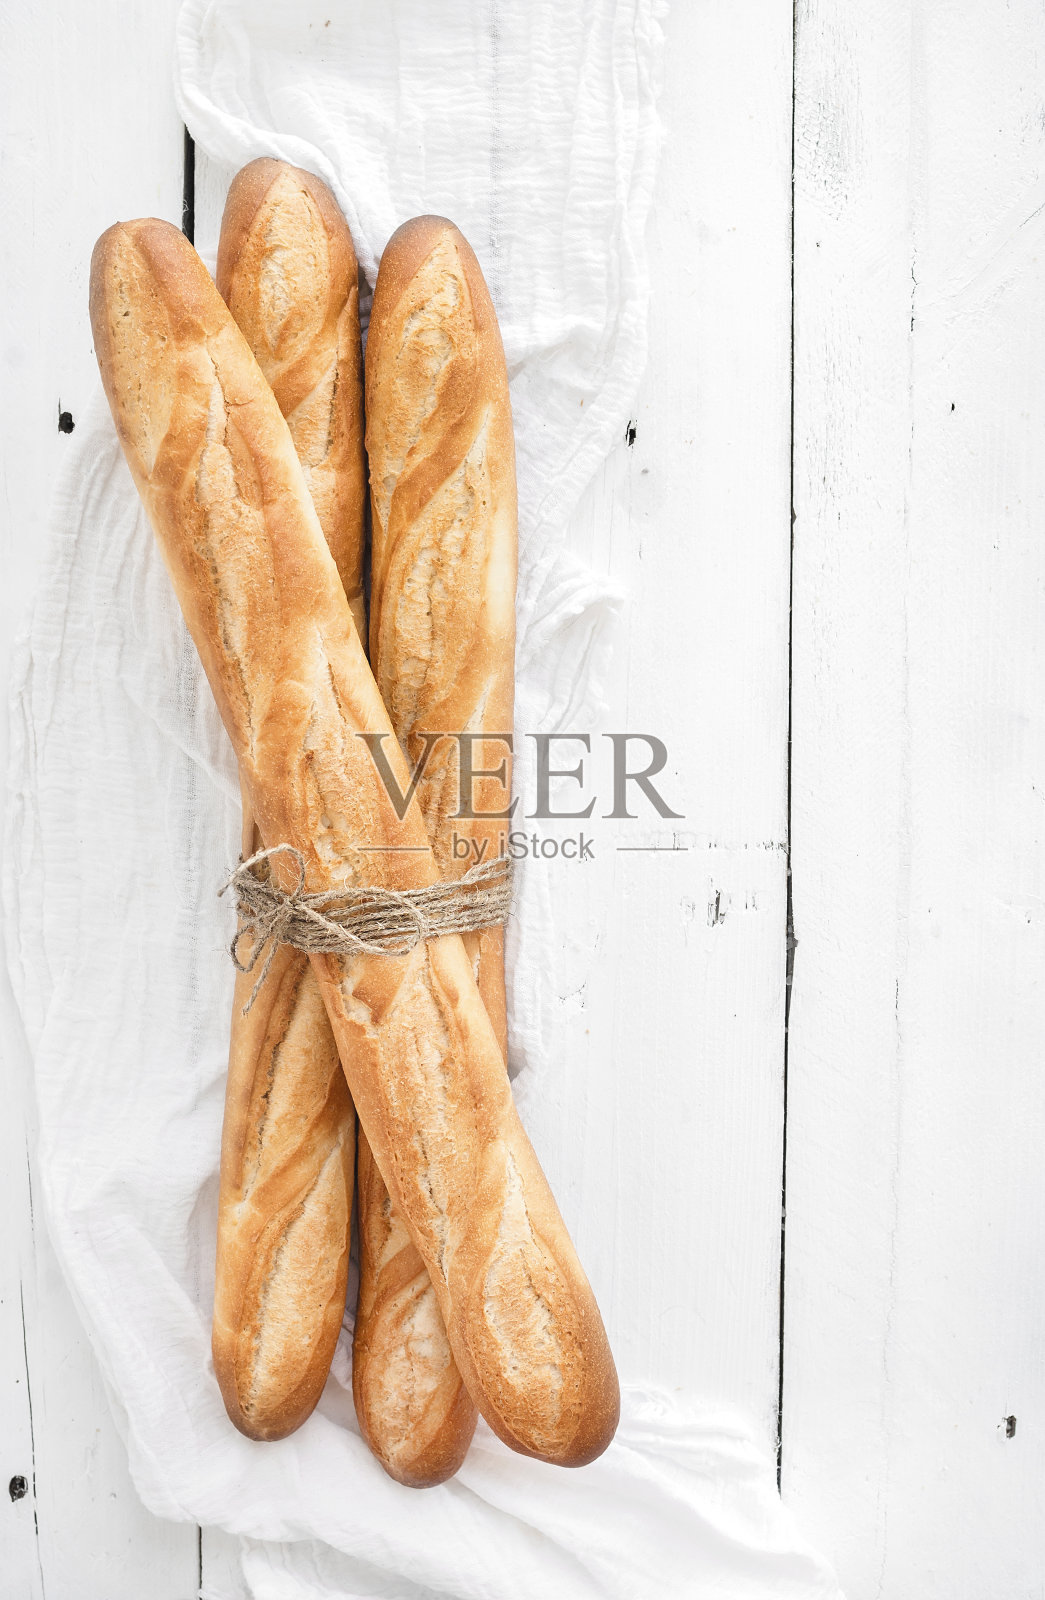 白木桌上刚烤好的法式长棍面包。俯视图照片摄影图片